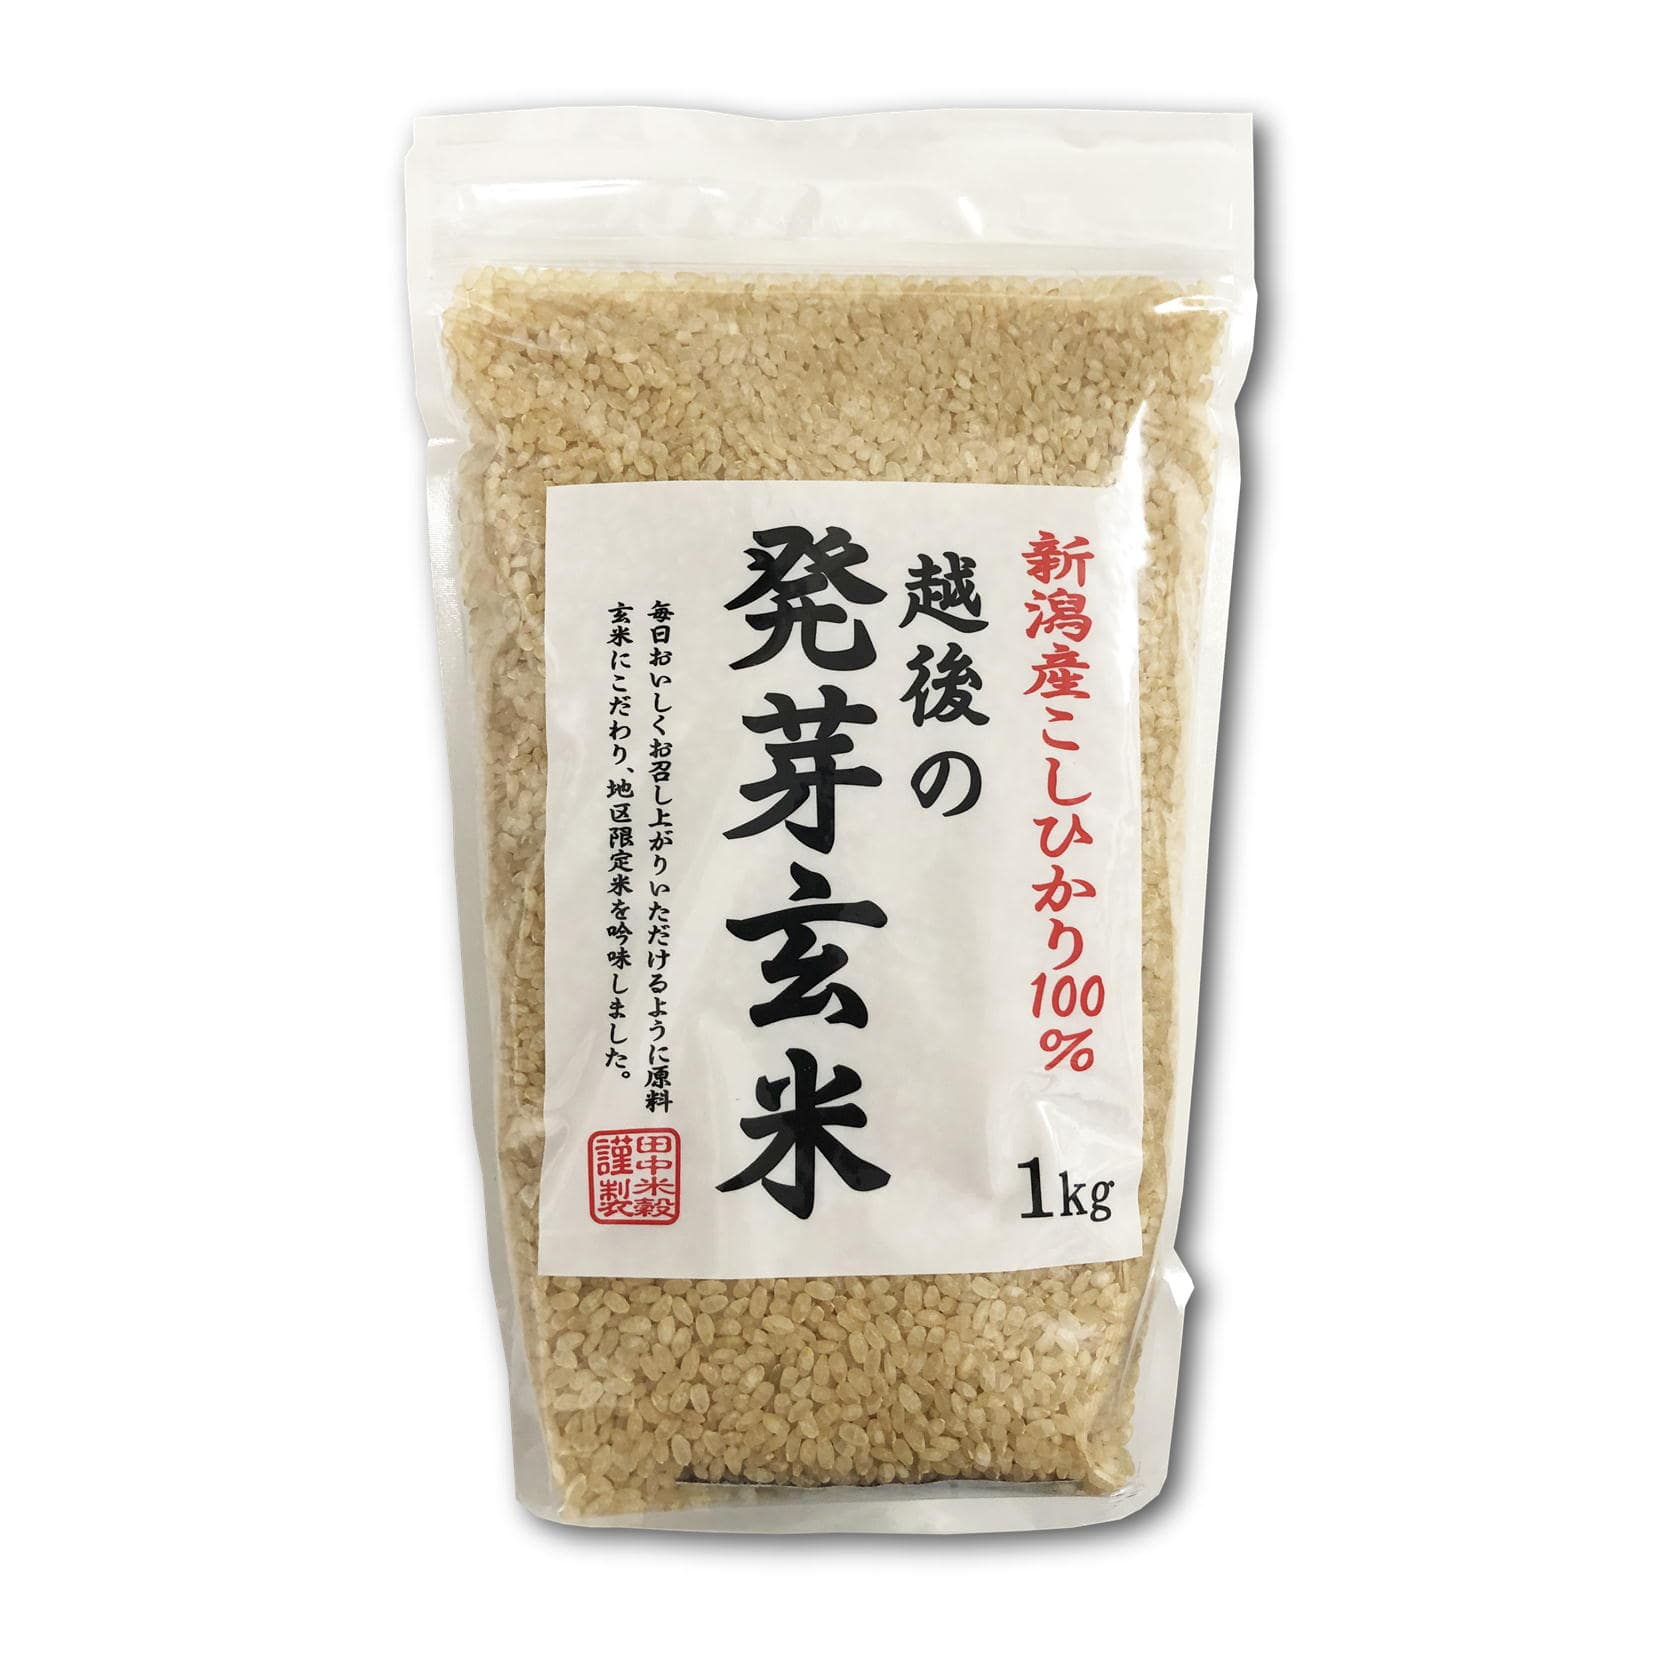 新潟県産 越後の発芽玄米 コシヒカリ 2kg